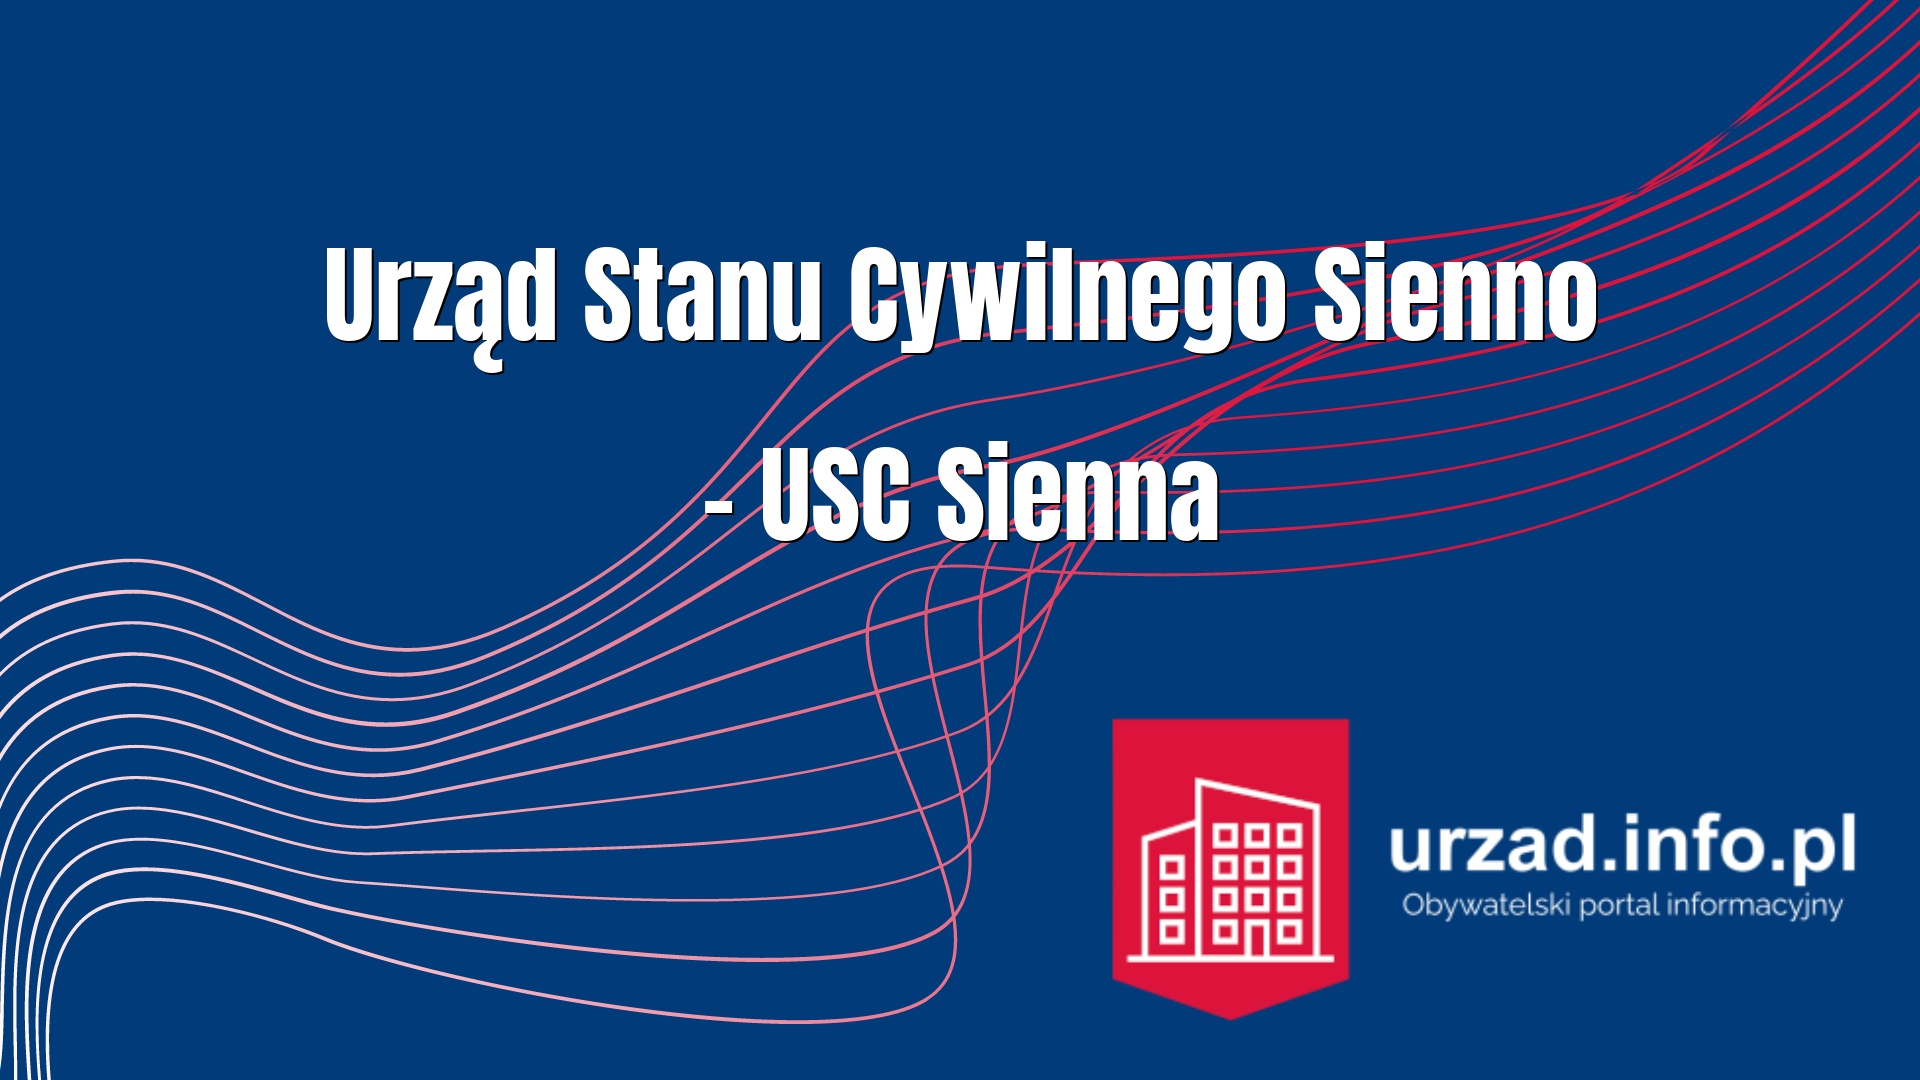 Urząd Stanu Cywilnego Sienno – USC Sienna